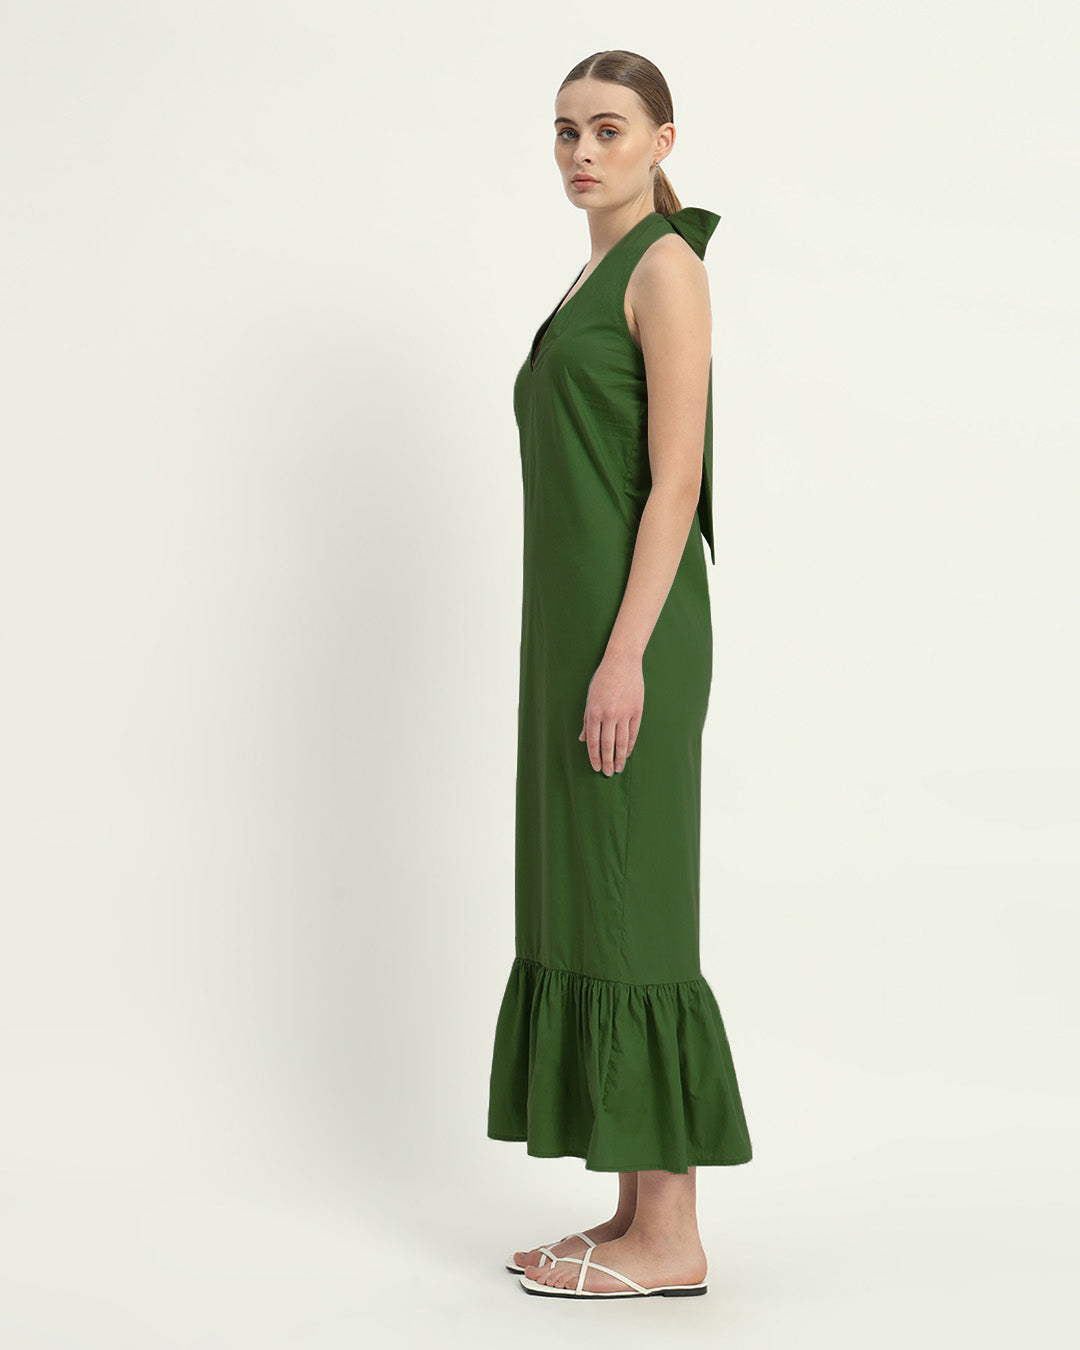 The Wellsville Emerald Cotton Dress